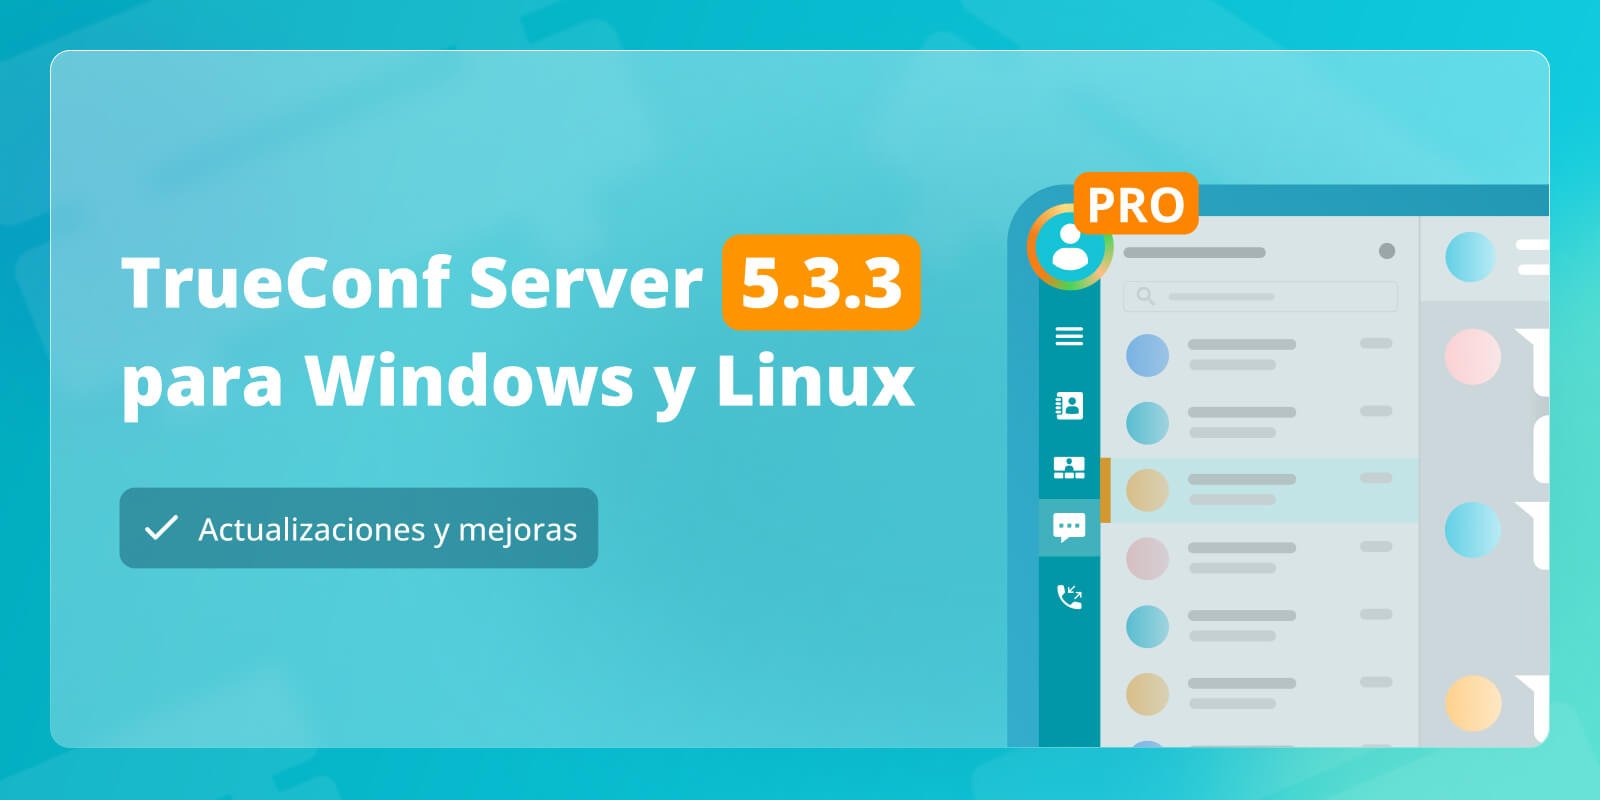 TrueConf Server 5.3.3: actualizaciones y mejoras 4